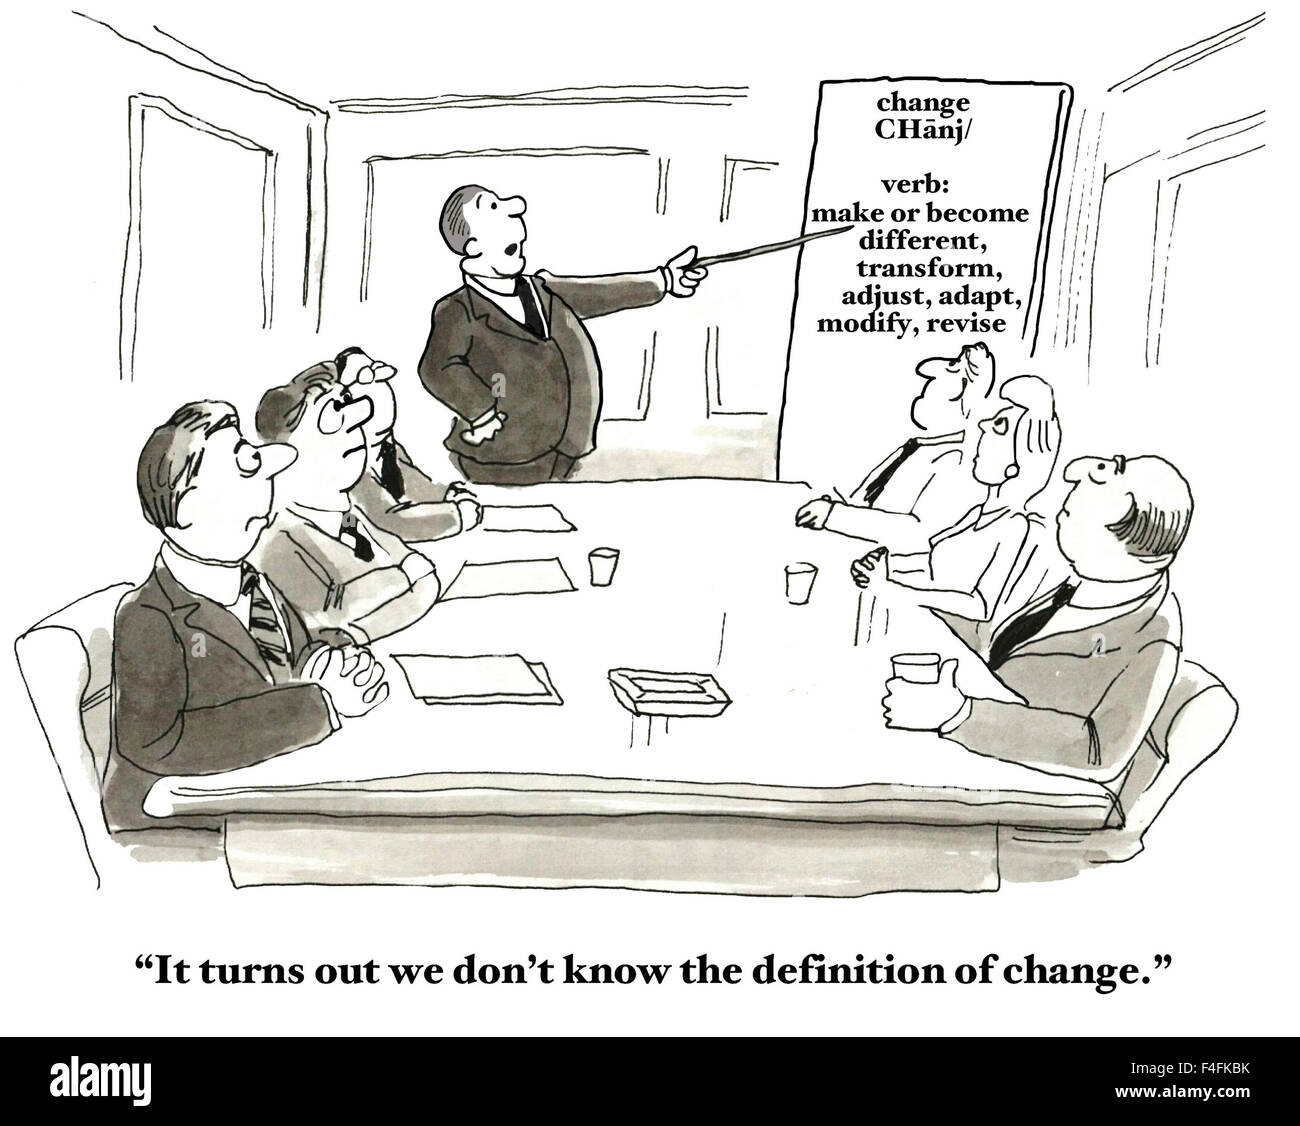 Cartoon professionnel de personnes lors d'une réunion ou d'un graphique la définition de "modifier". "Il s'avère que nous ne connaissons pas la définition de changement." Banque D'Images